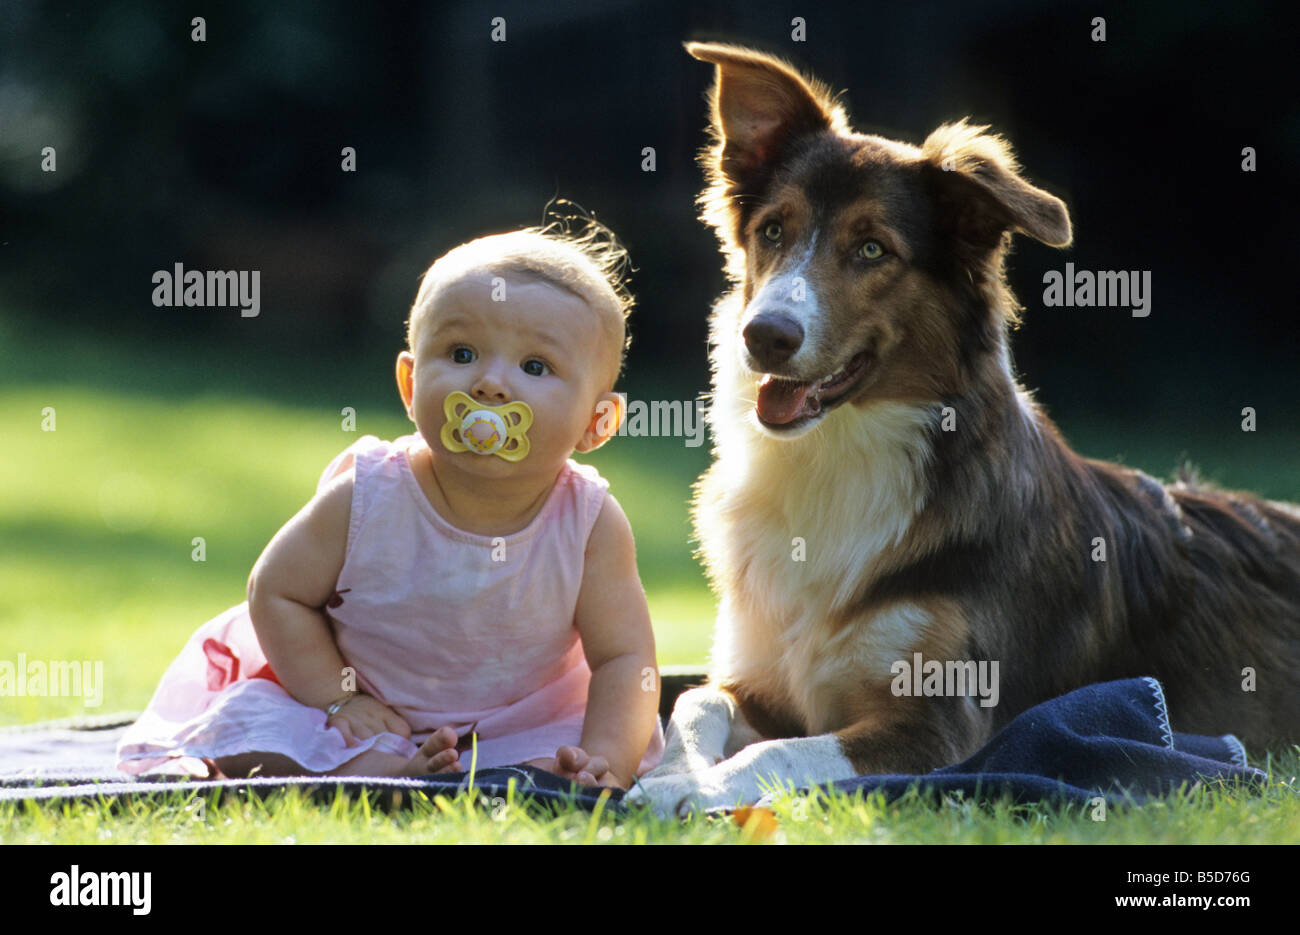 Berger Australien (Canis lupus familiaris). Baby sitting next to dog sur une couverture sur une pelouse Banque D'Images